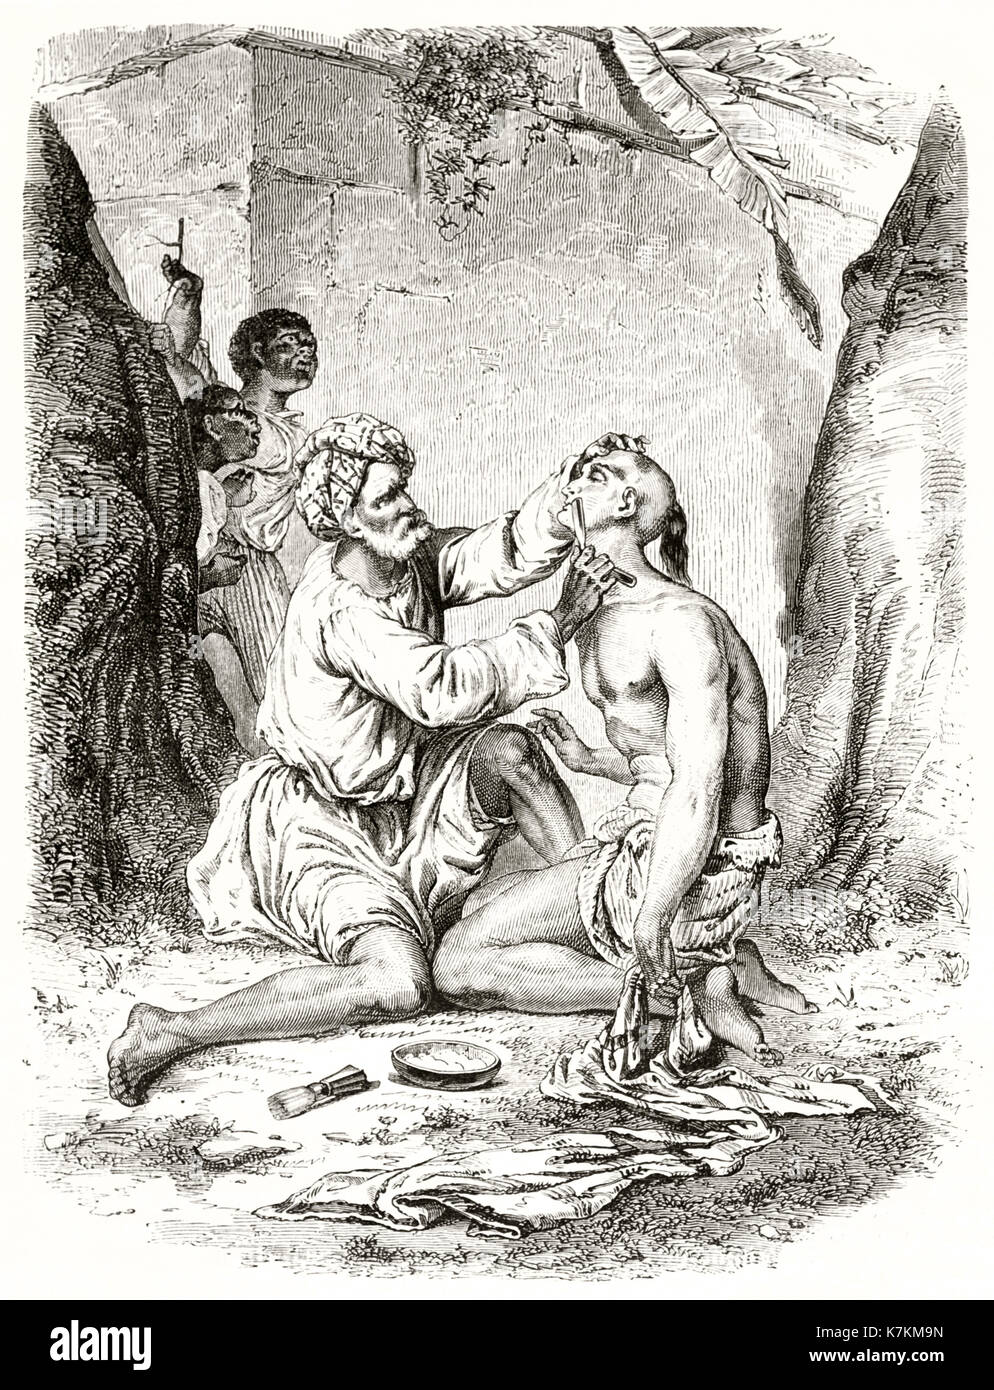 Ilustración antigua del indio barber en la isla de la reunión. Por De Berard después Roussin, publ. en le Tour du Monde, París, 1862 Foto de stock